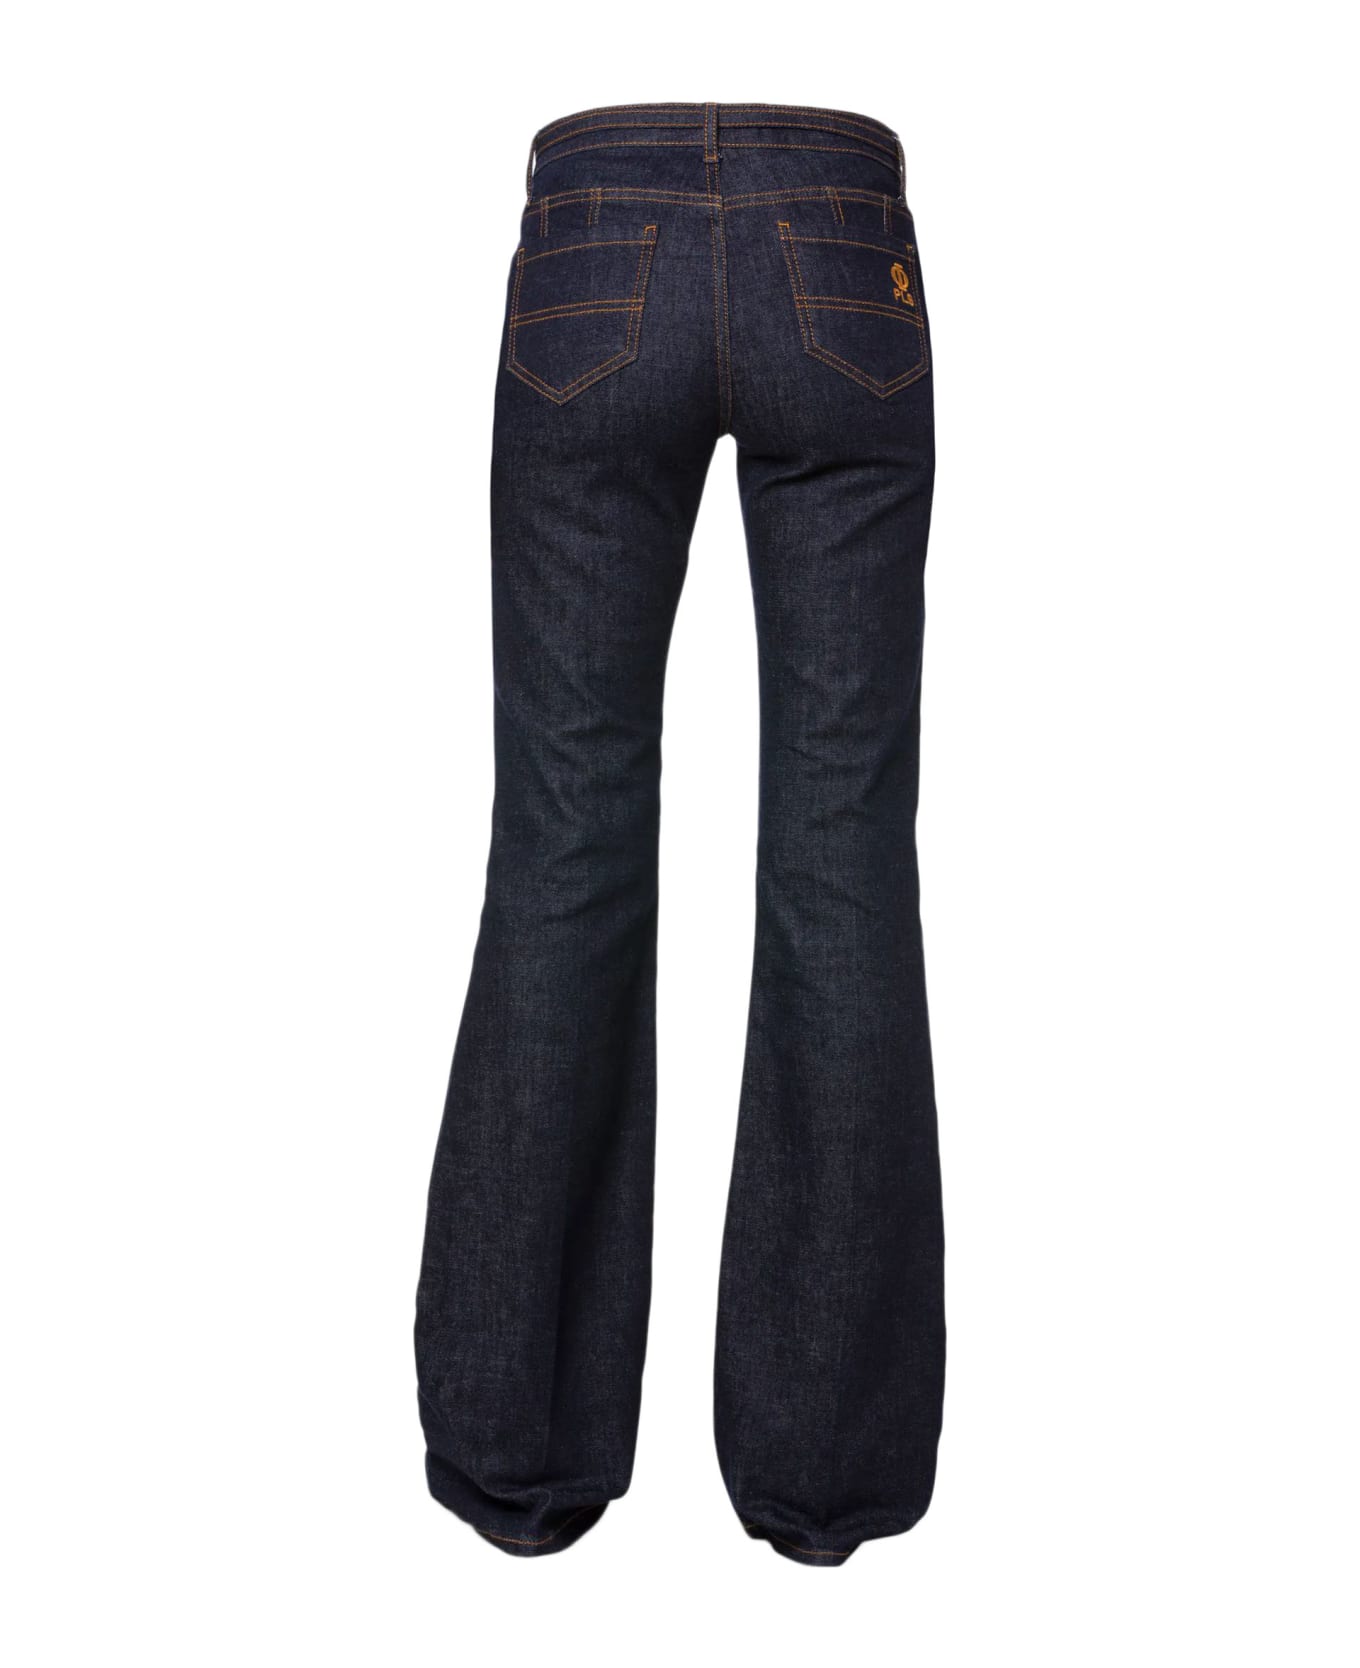 Philosophy di Lorenzo Serafini Flare Trousers In Soft Stretch Blue Denim Jeans - BLU